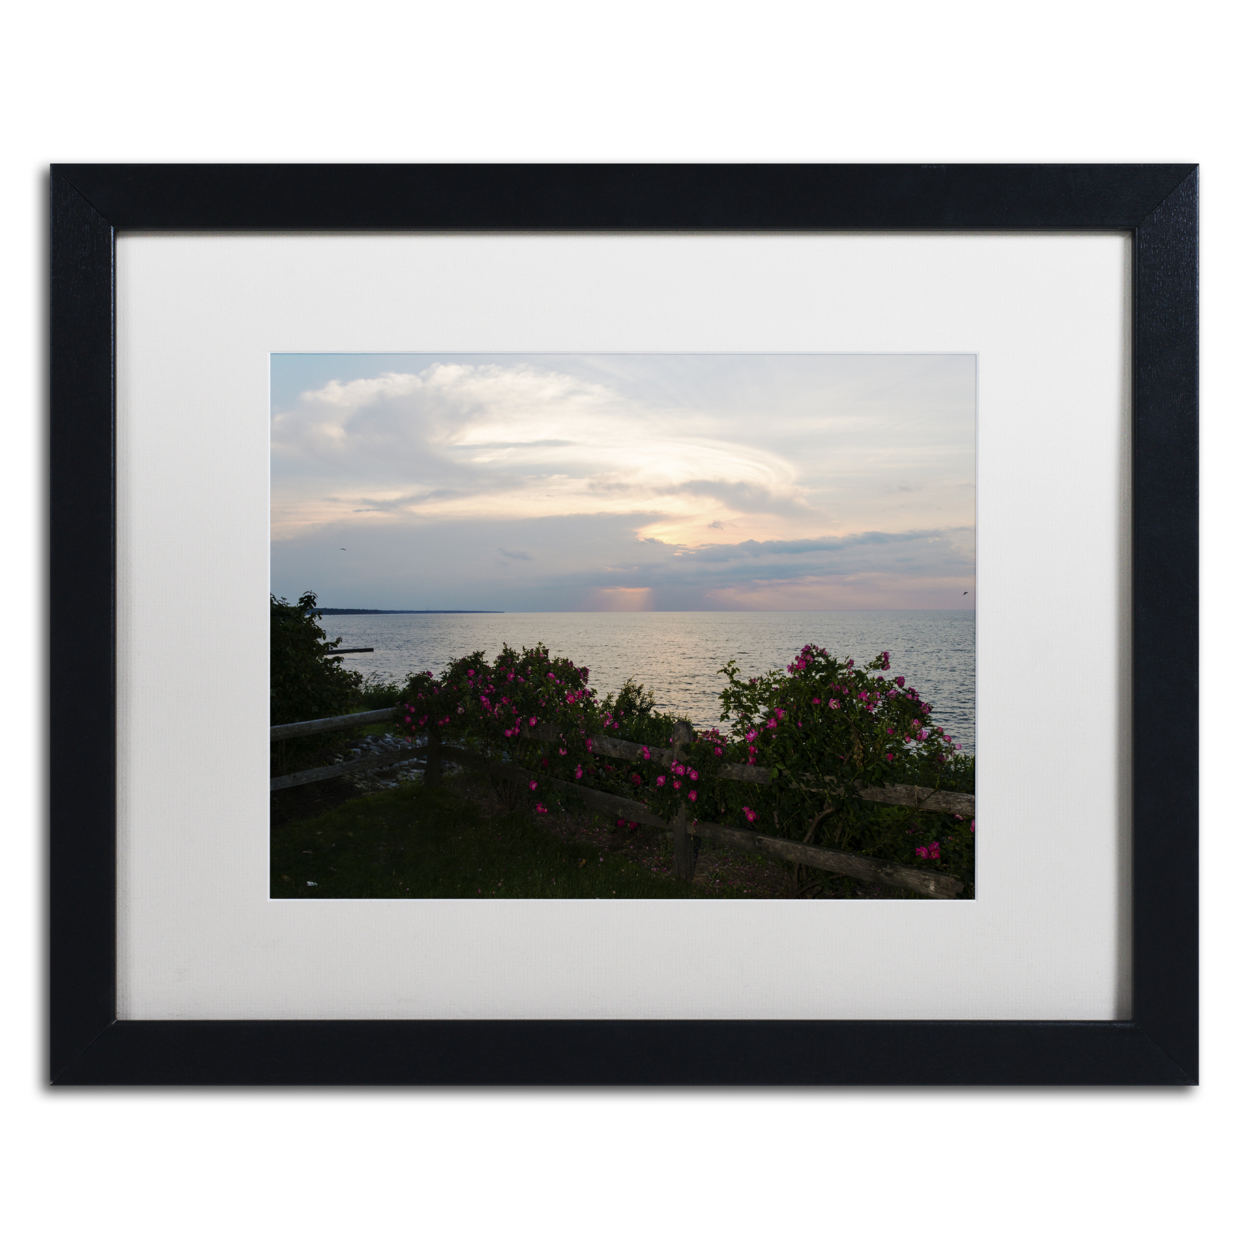 Kurt Shaffer 'Roses In Bloom Along The Lake' Black Wooden Framed Art 18 X 22 Inches